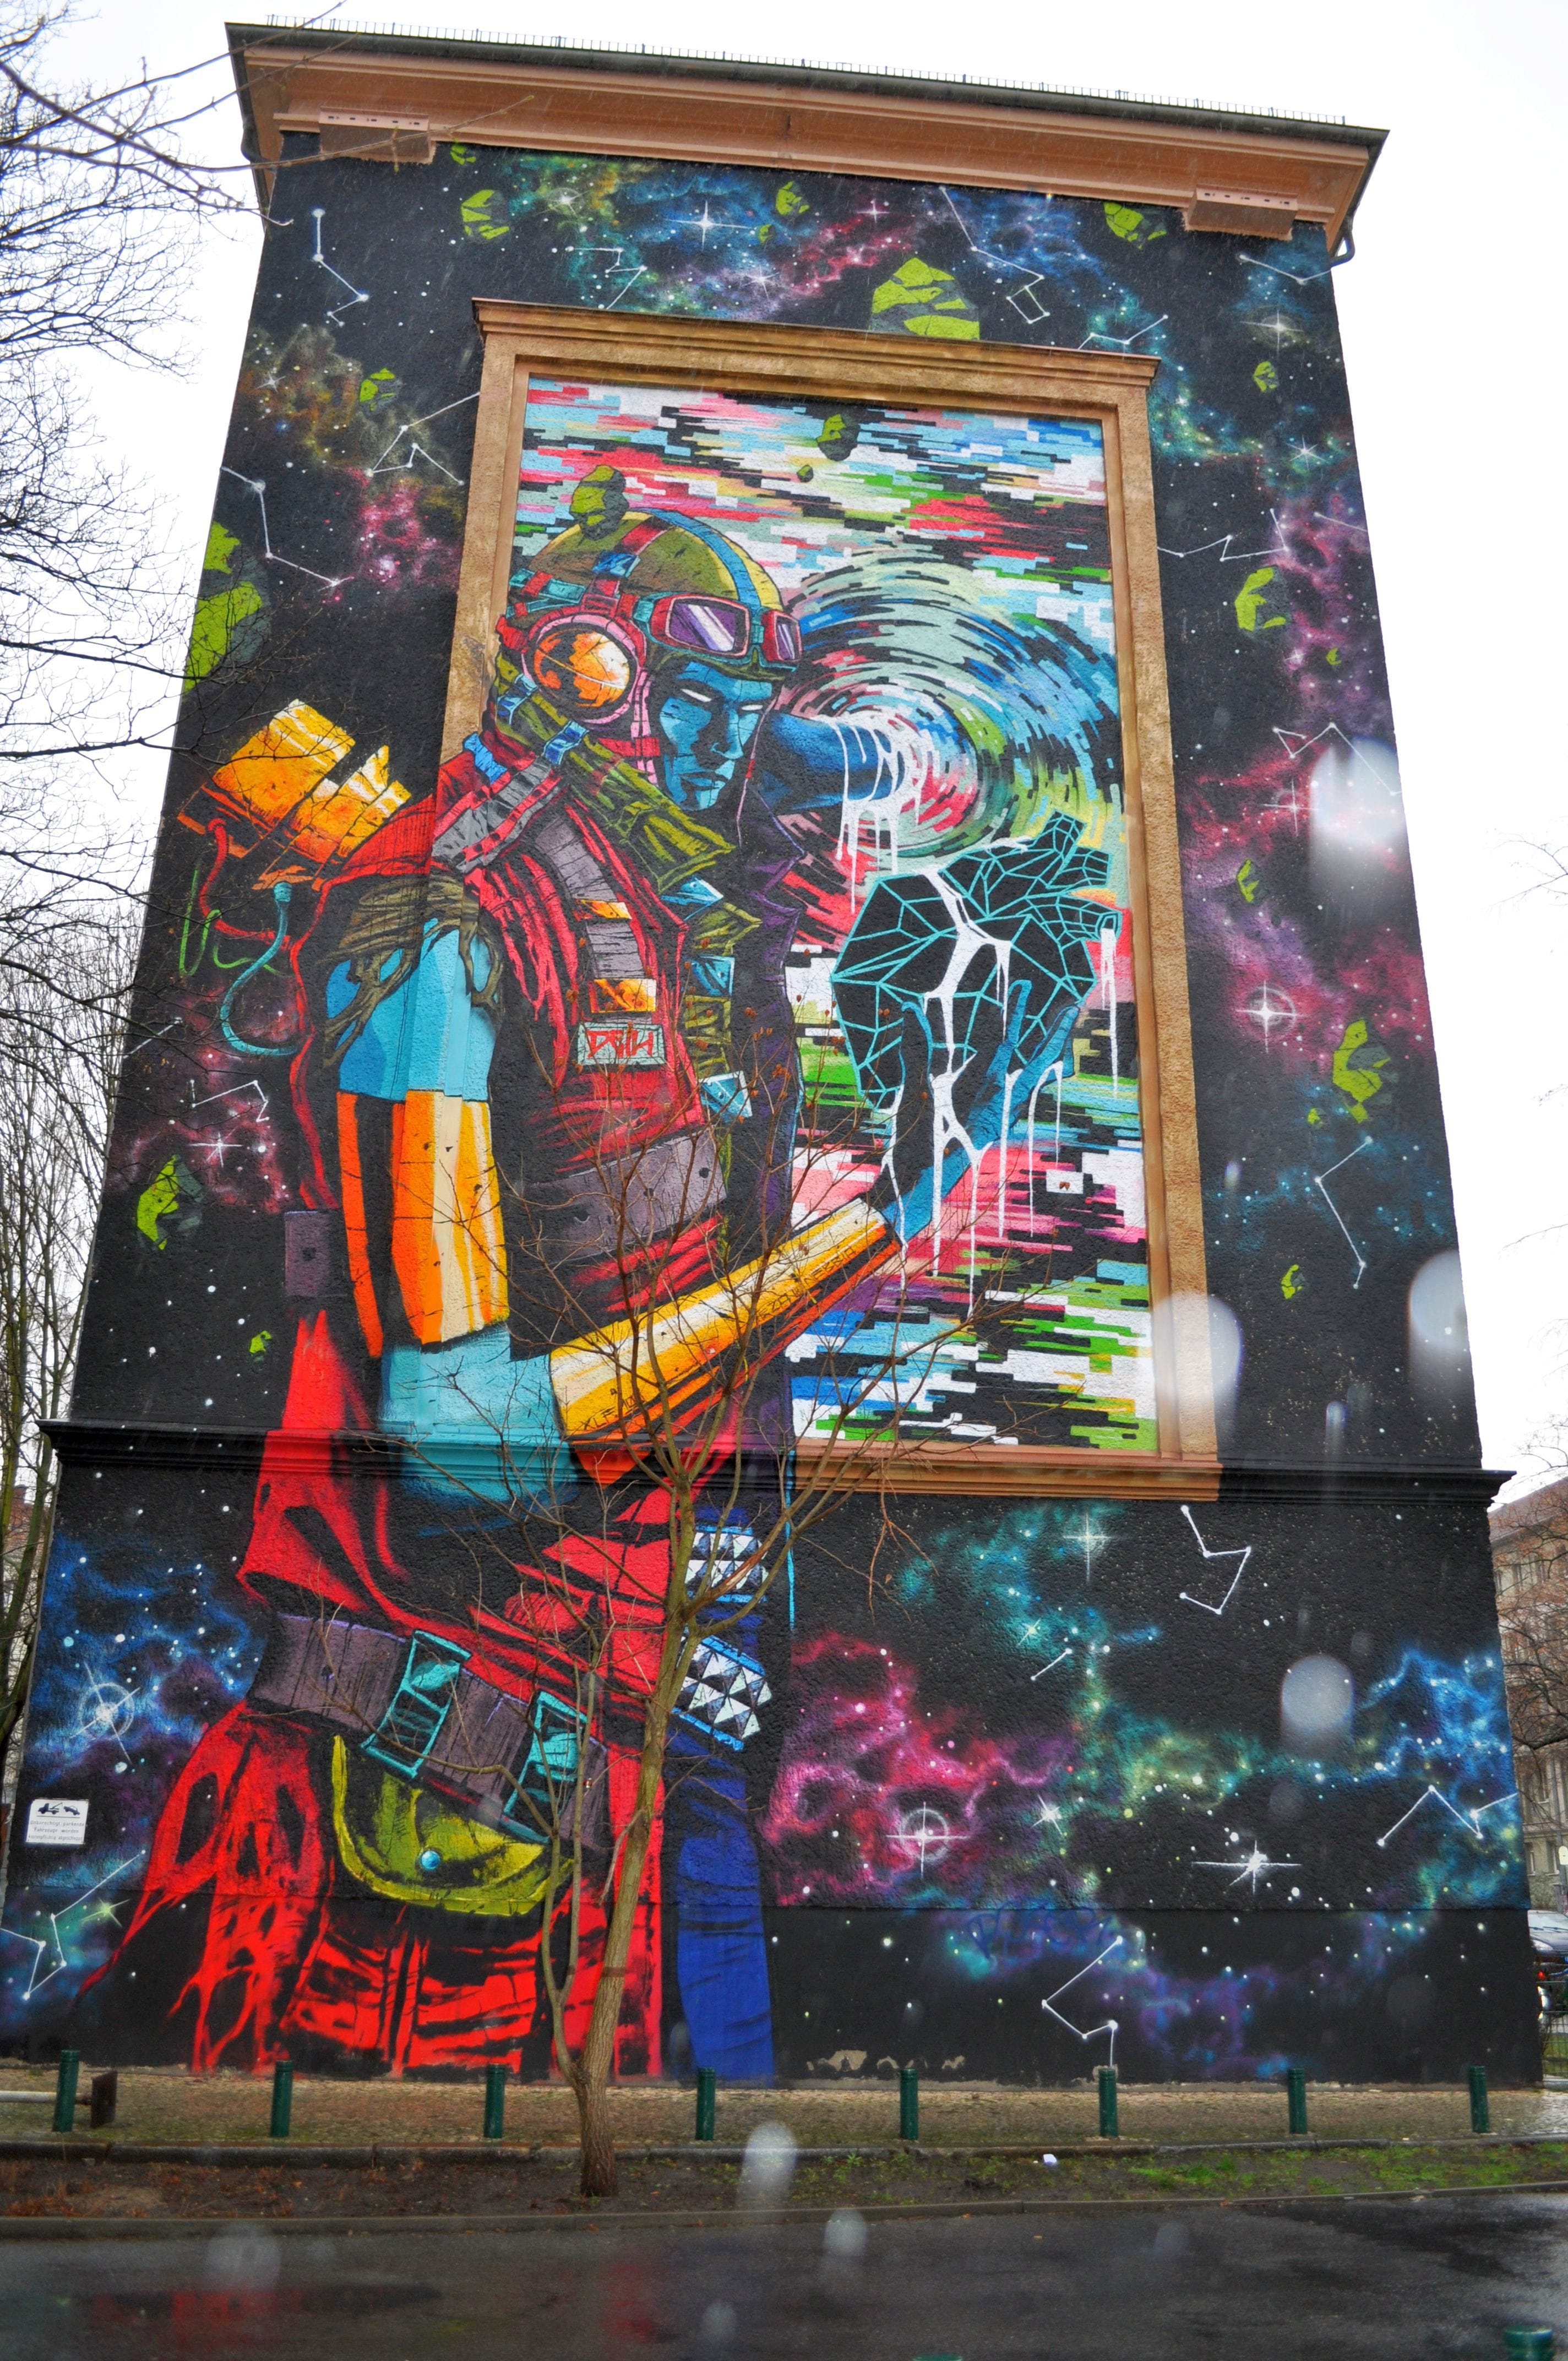 Graffiti 4762  by the artist Deih xlf captured by elettrotajik in Berlin Germany